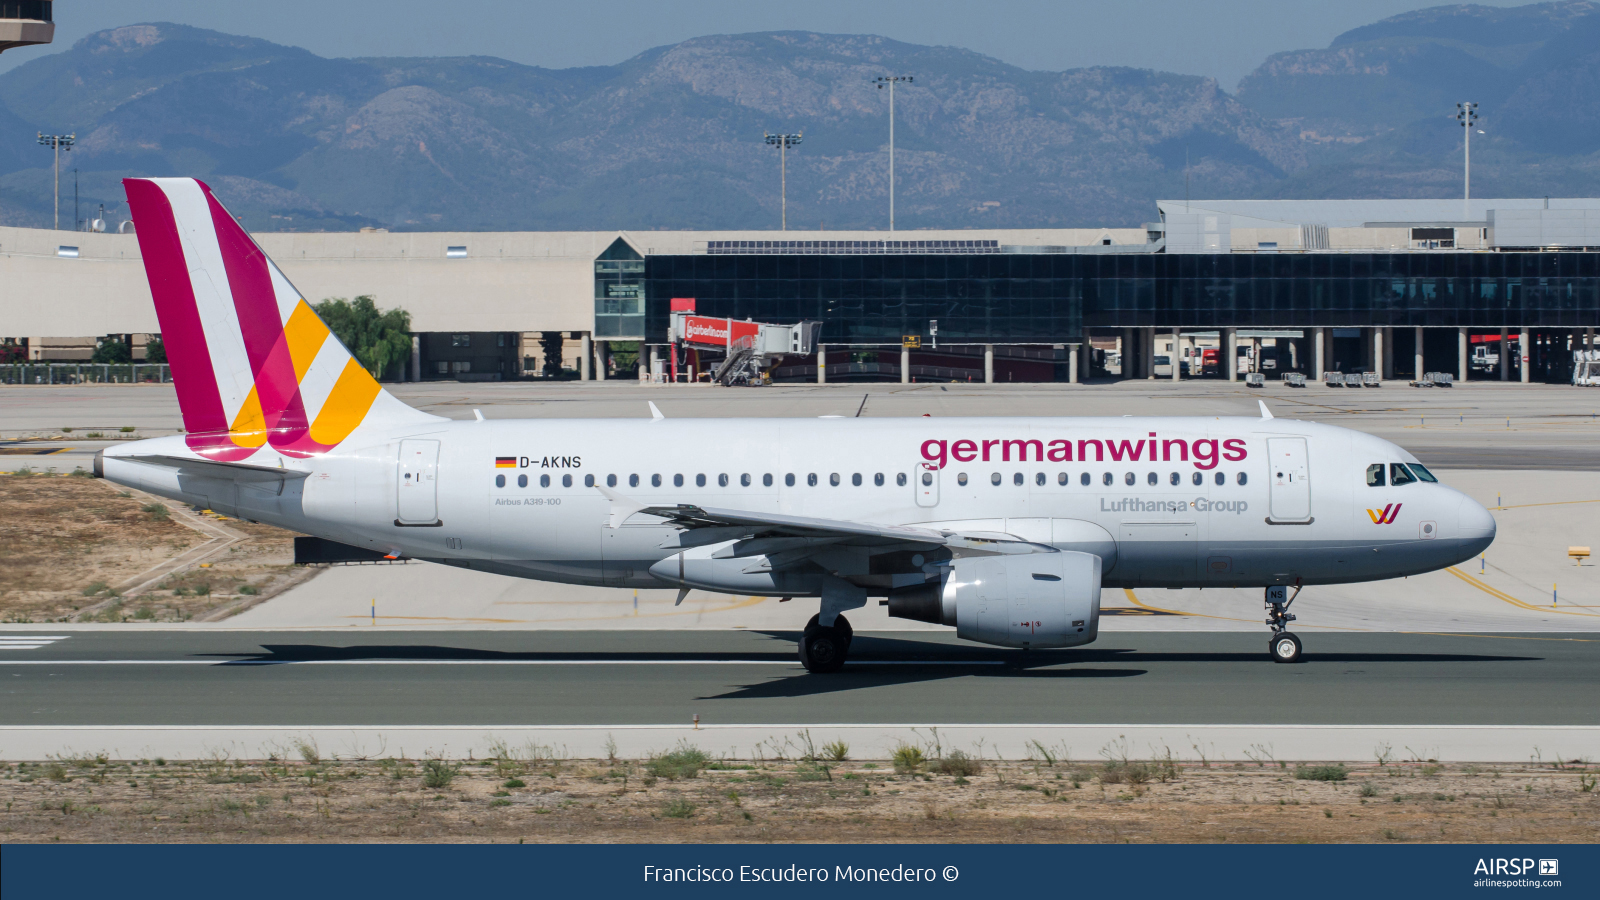 Germanwings  Airbus A319  D-AKNS